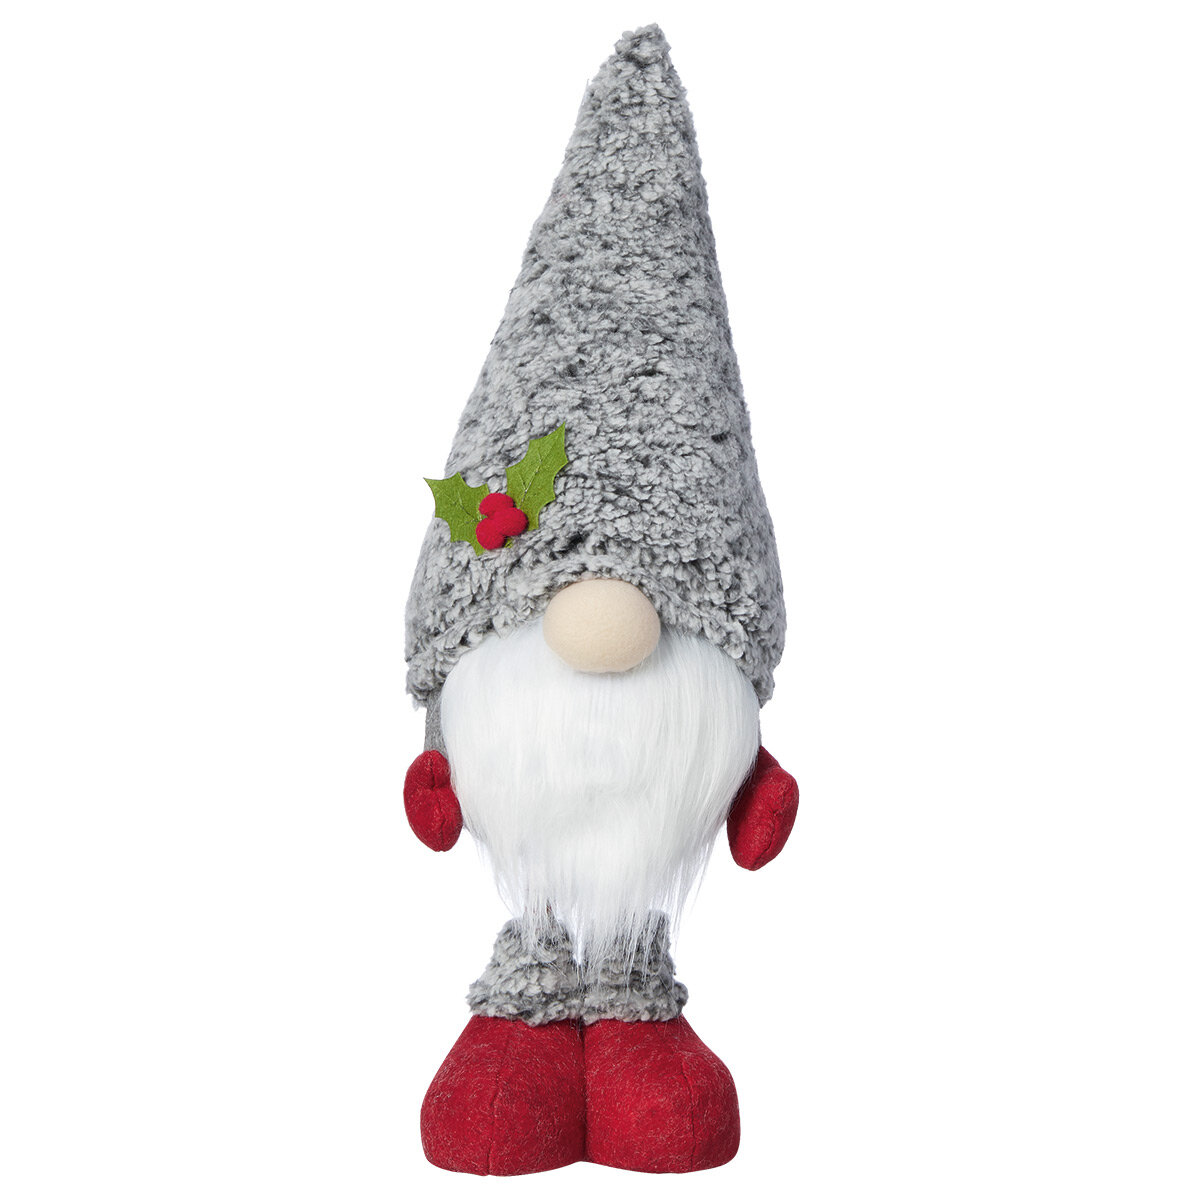 Buy Gnomes Set of 3 Individual Image at Costco.co.uk